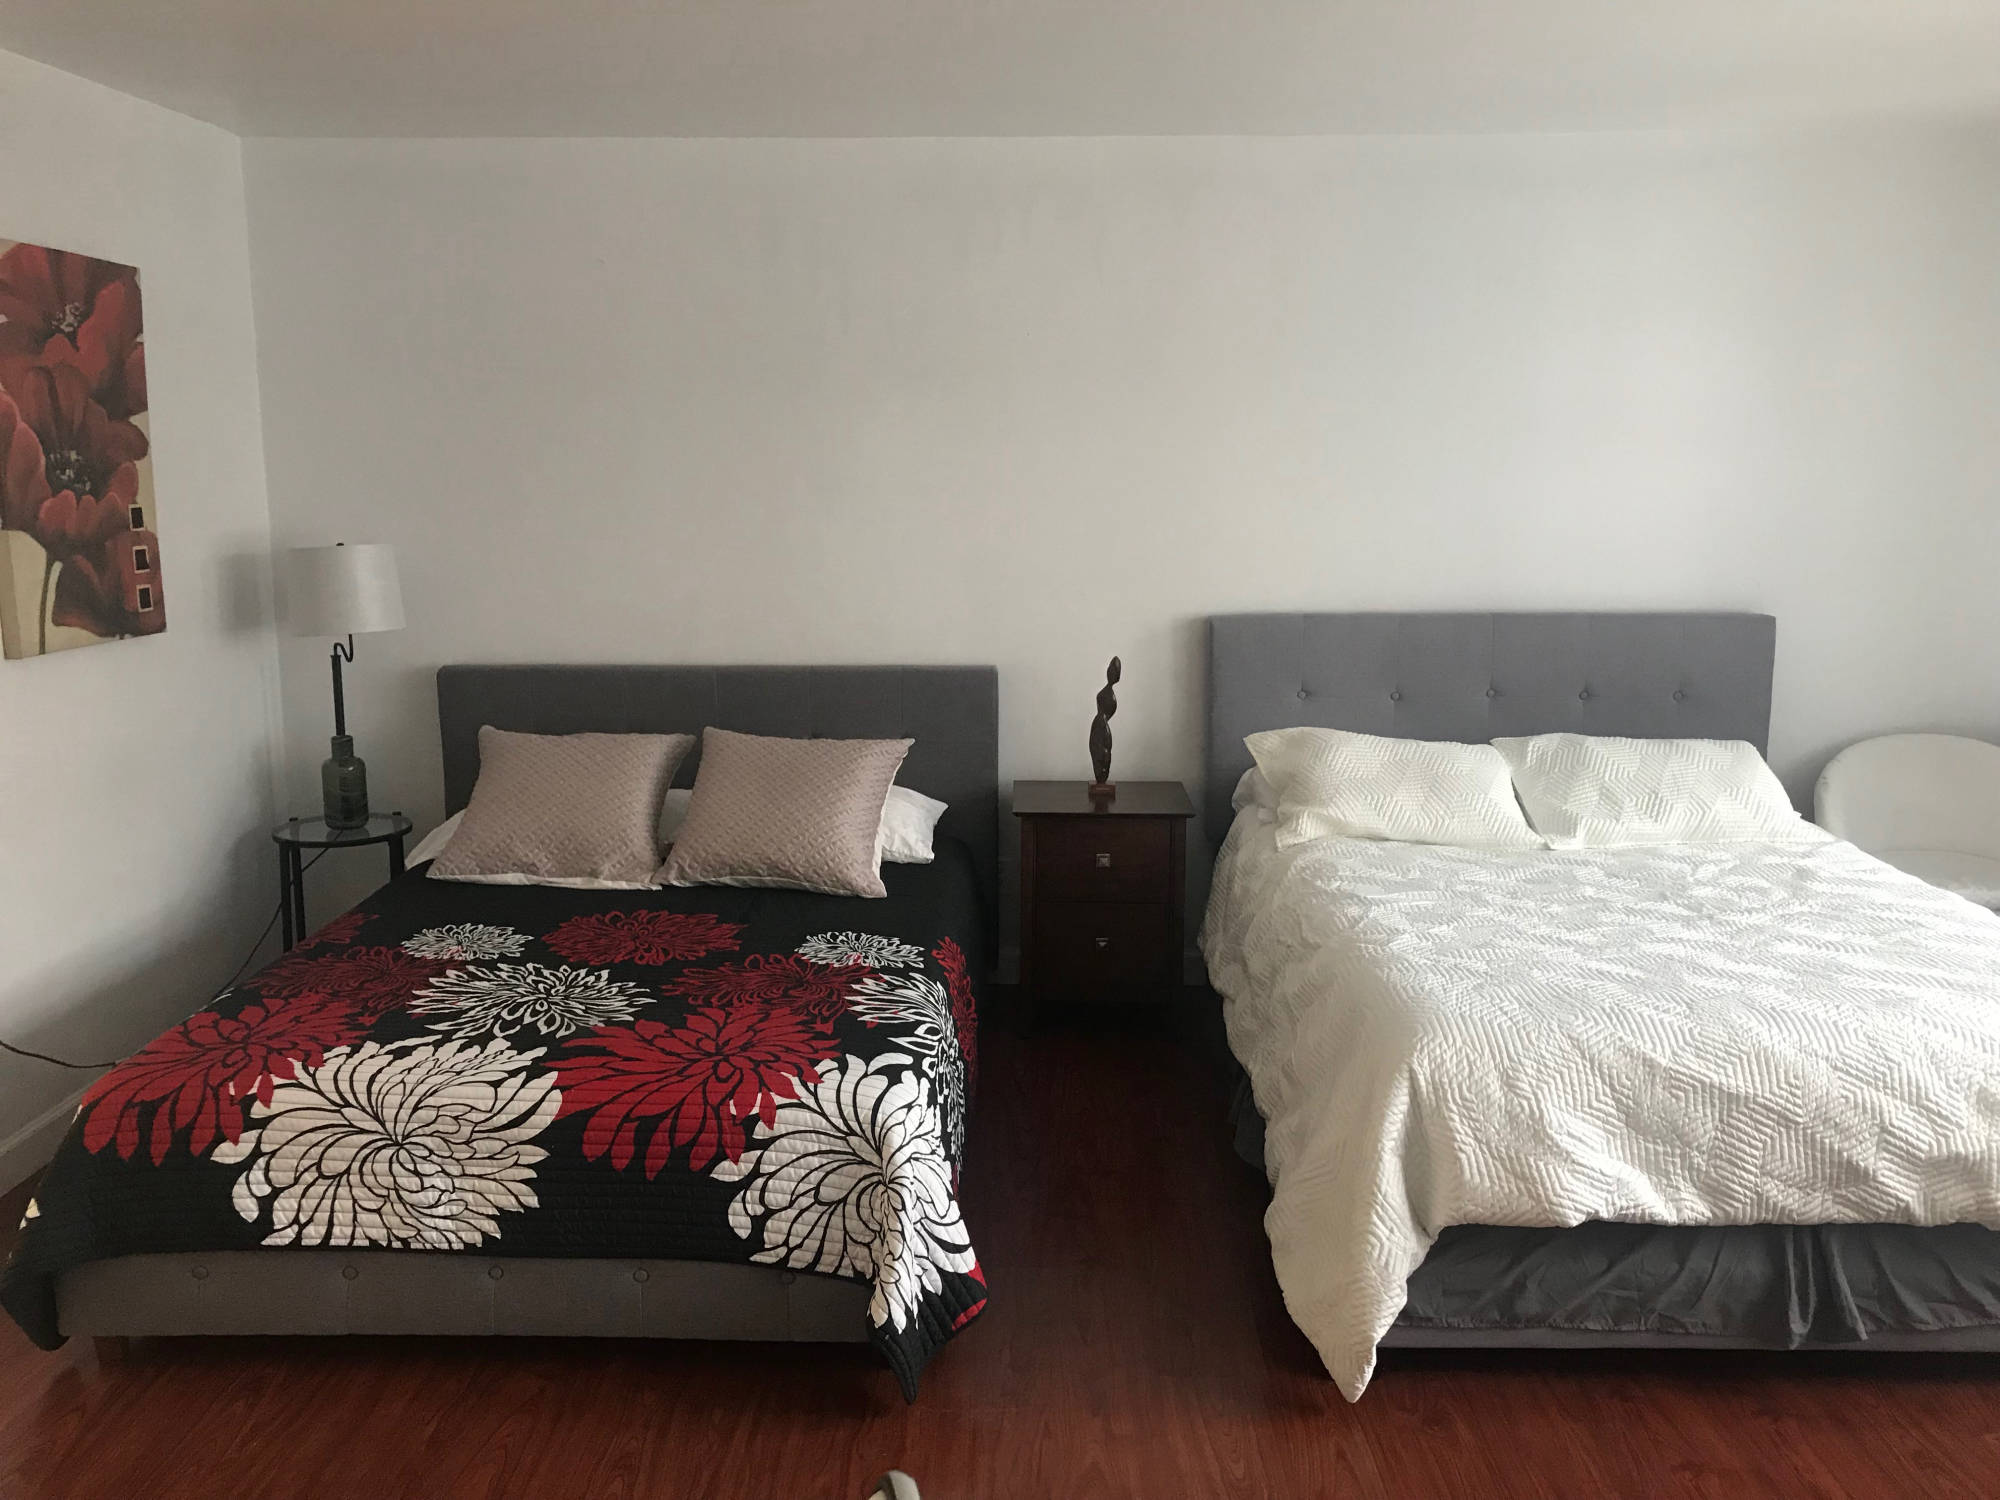 2 beds in bedroom